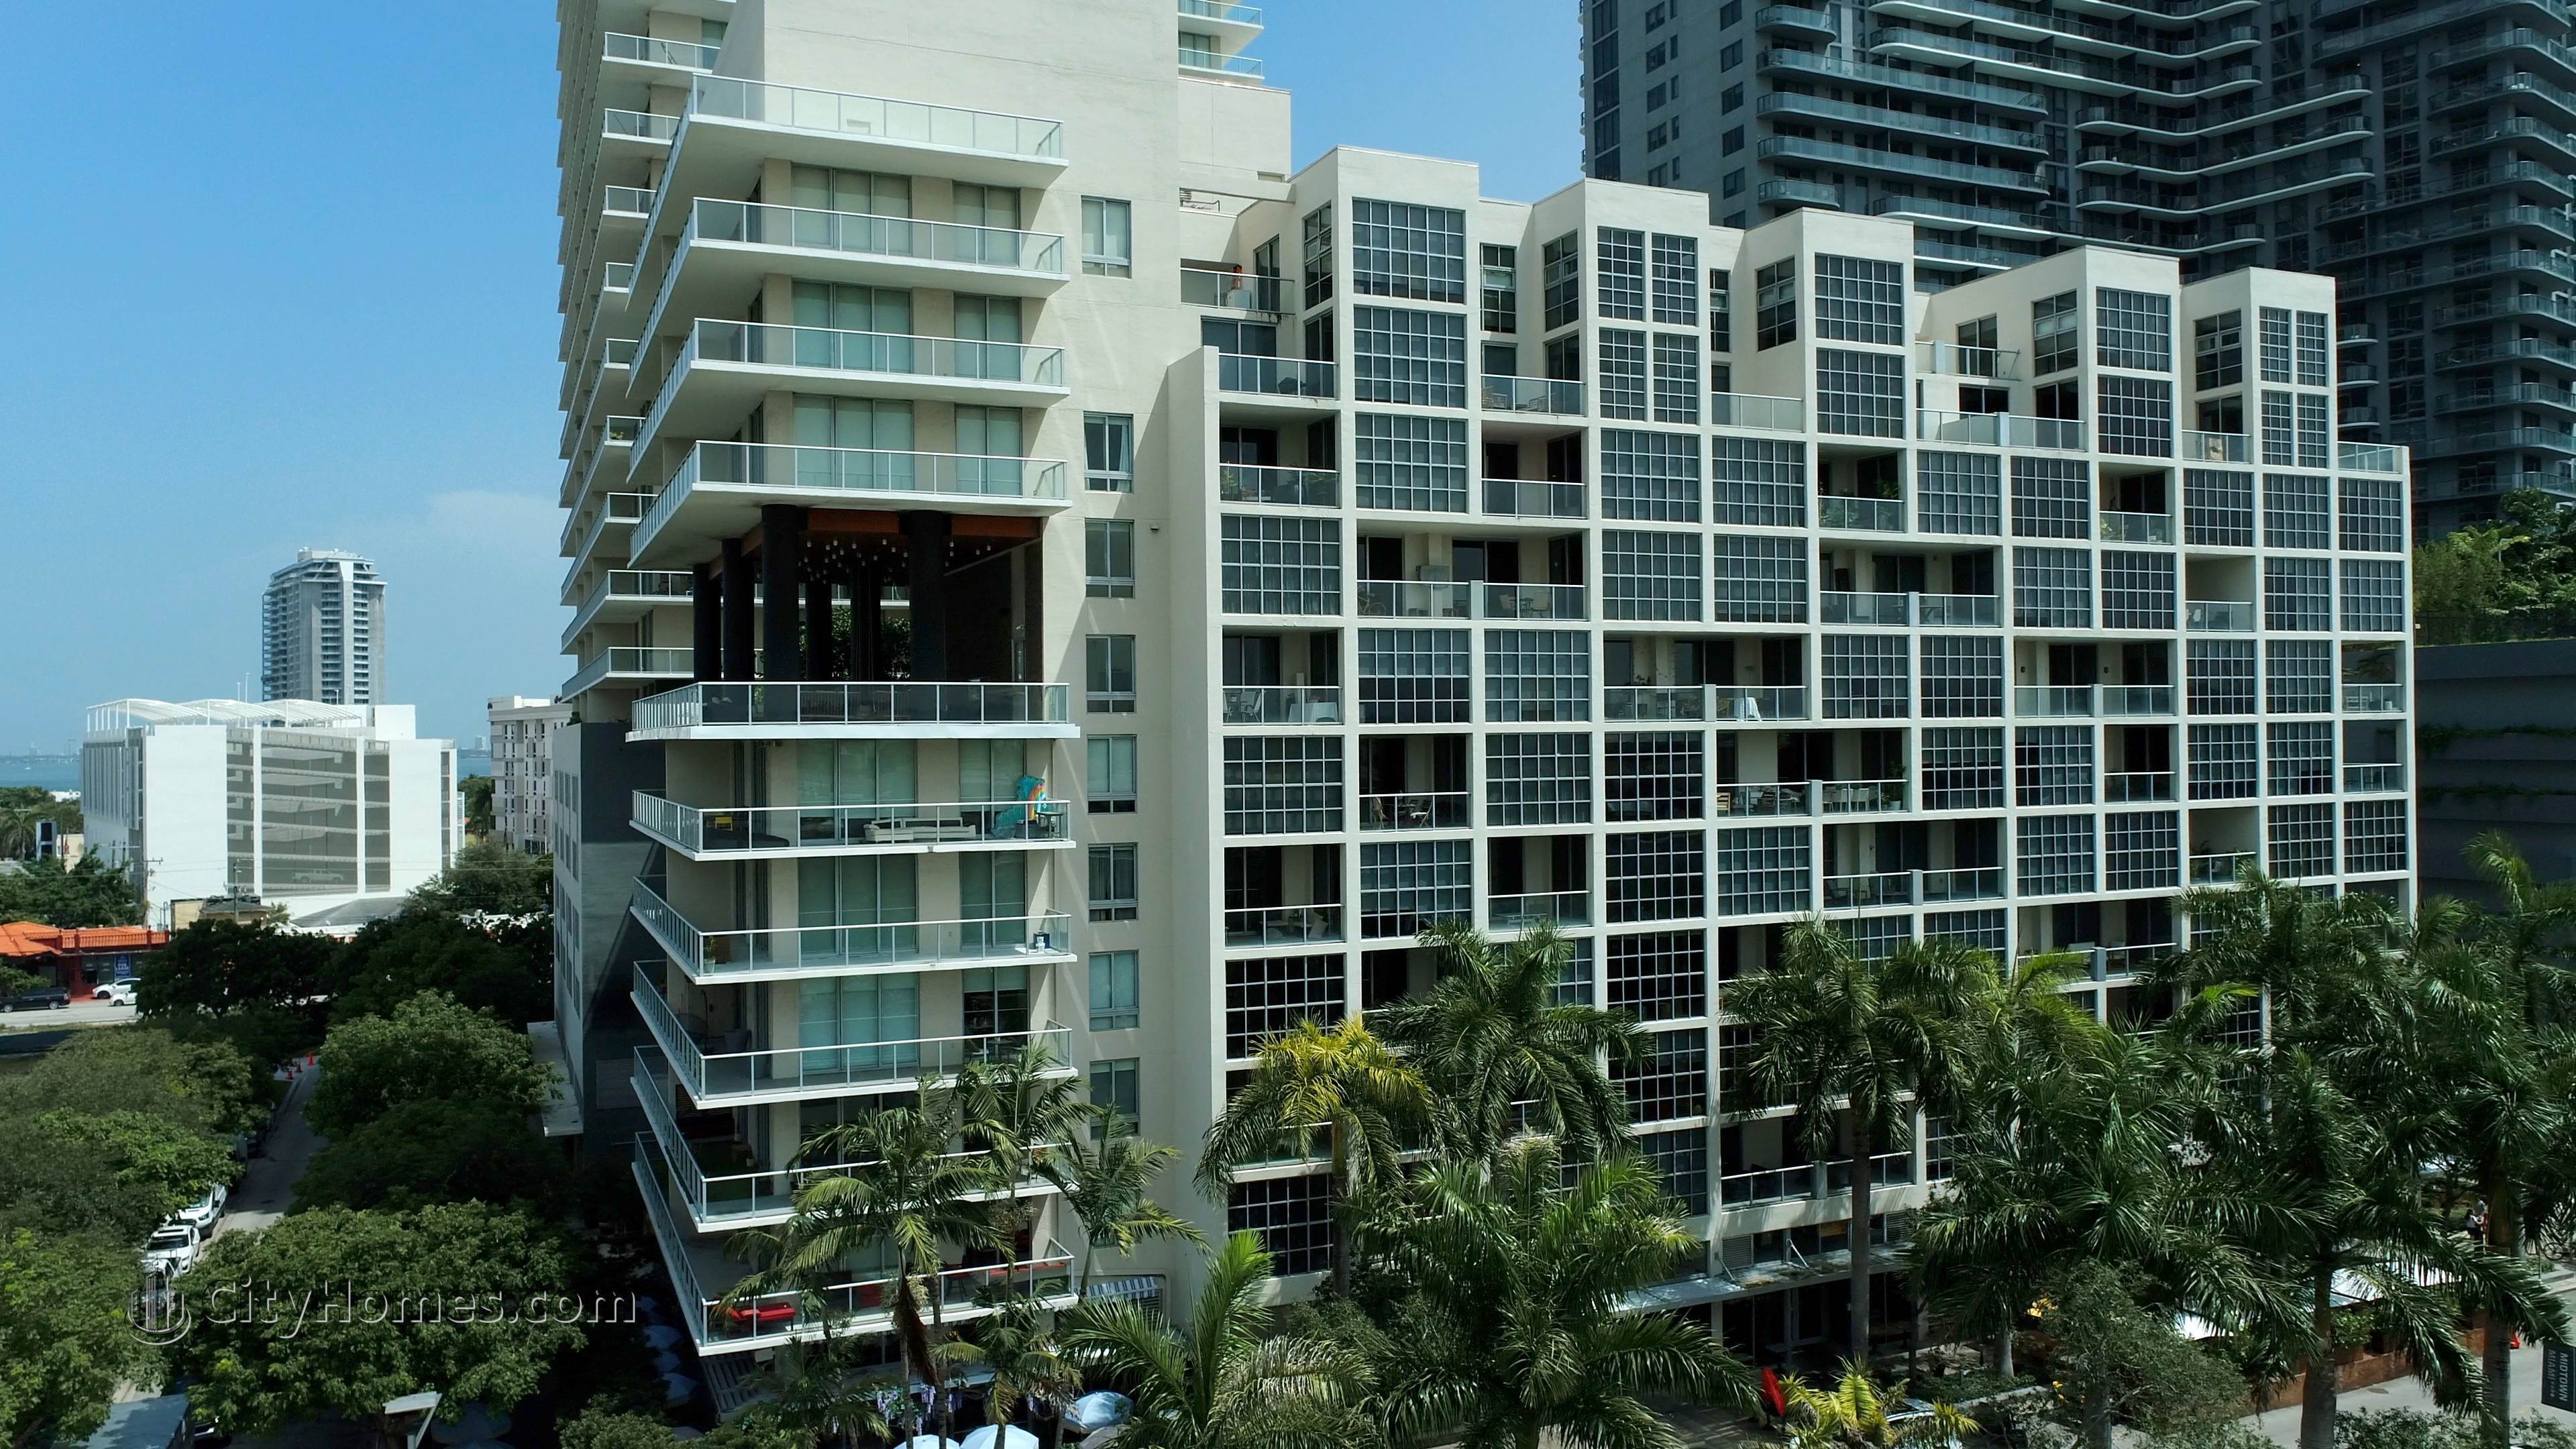 2. Two Midtown building at 3470 E Coast Avenue, Midtown Miami, Miami, FL 33137